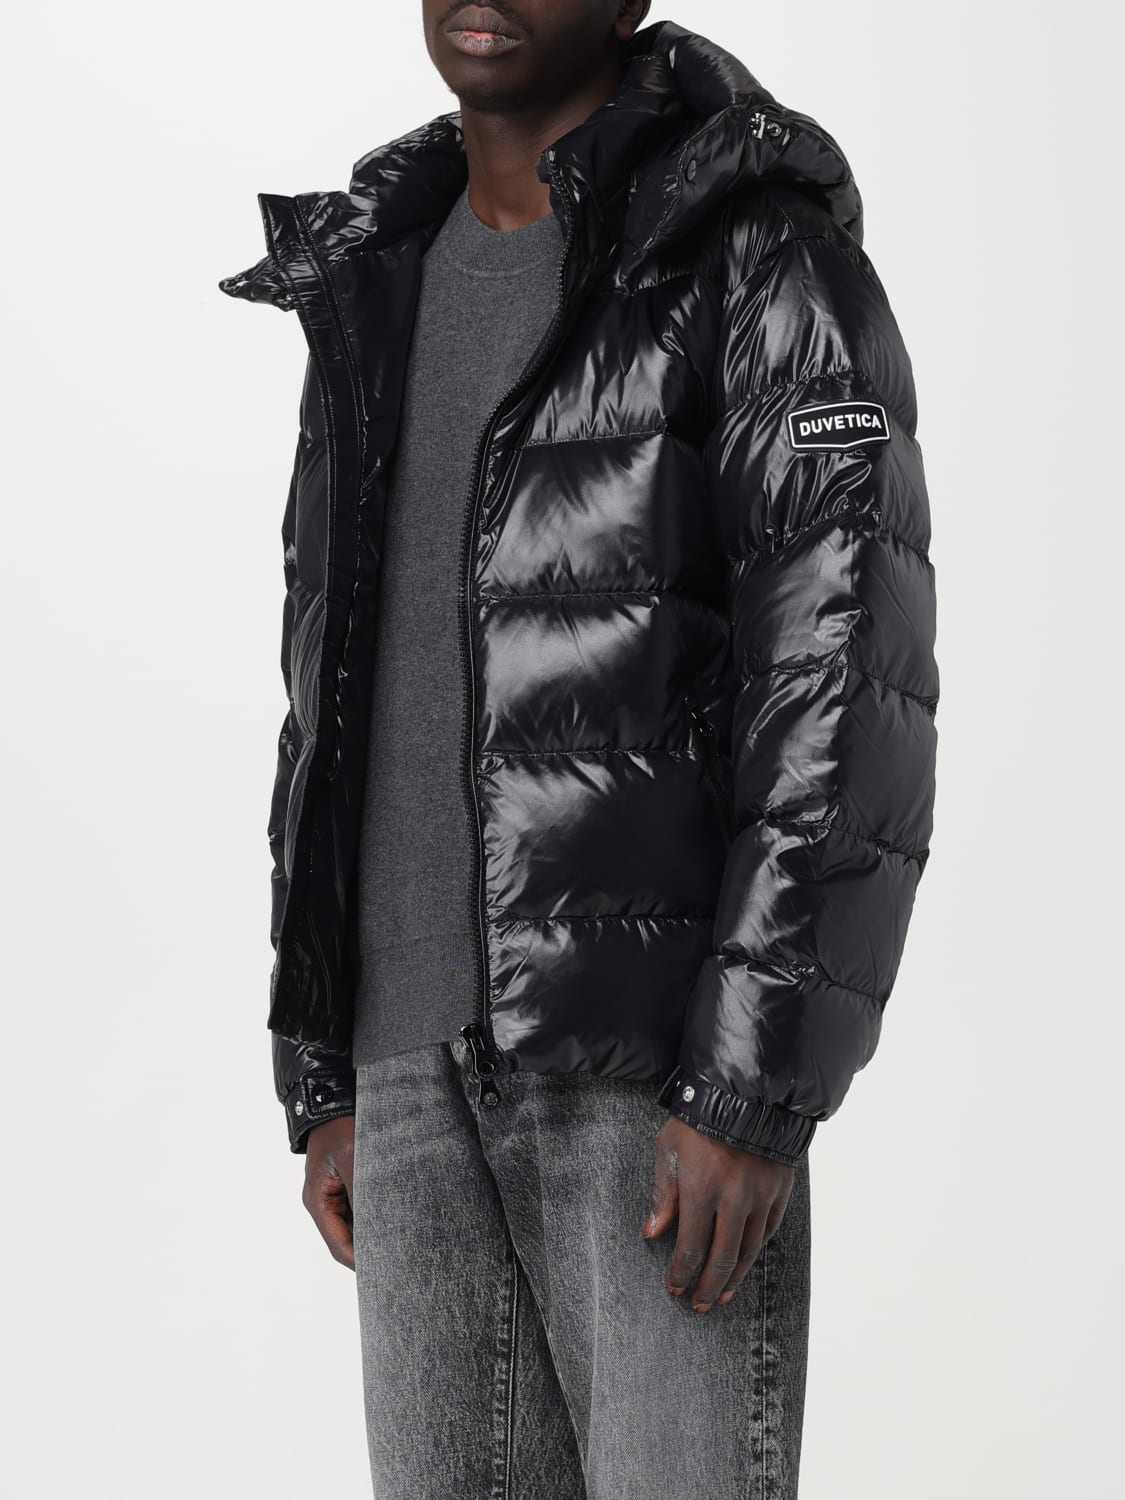 DUVETICA: Jacket men - Black | DUVETICA jacket VUDJ10435K0001 online at ...